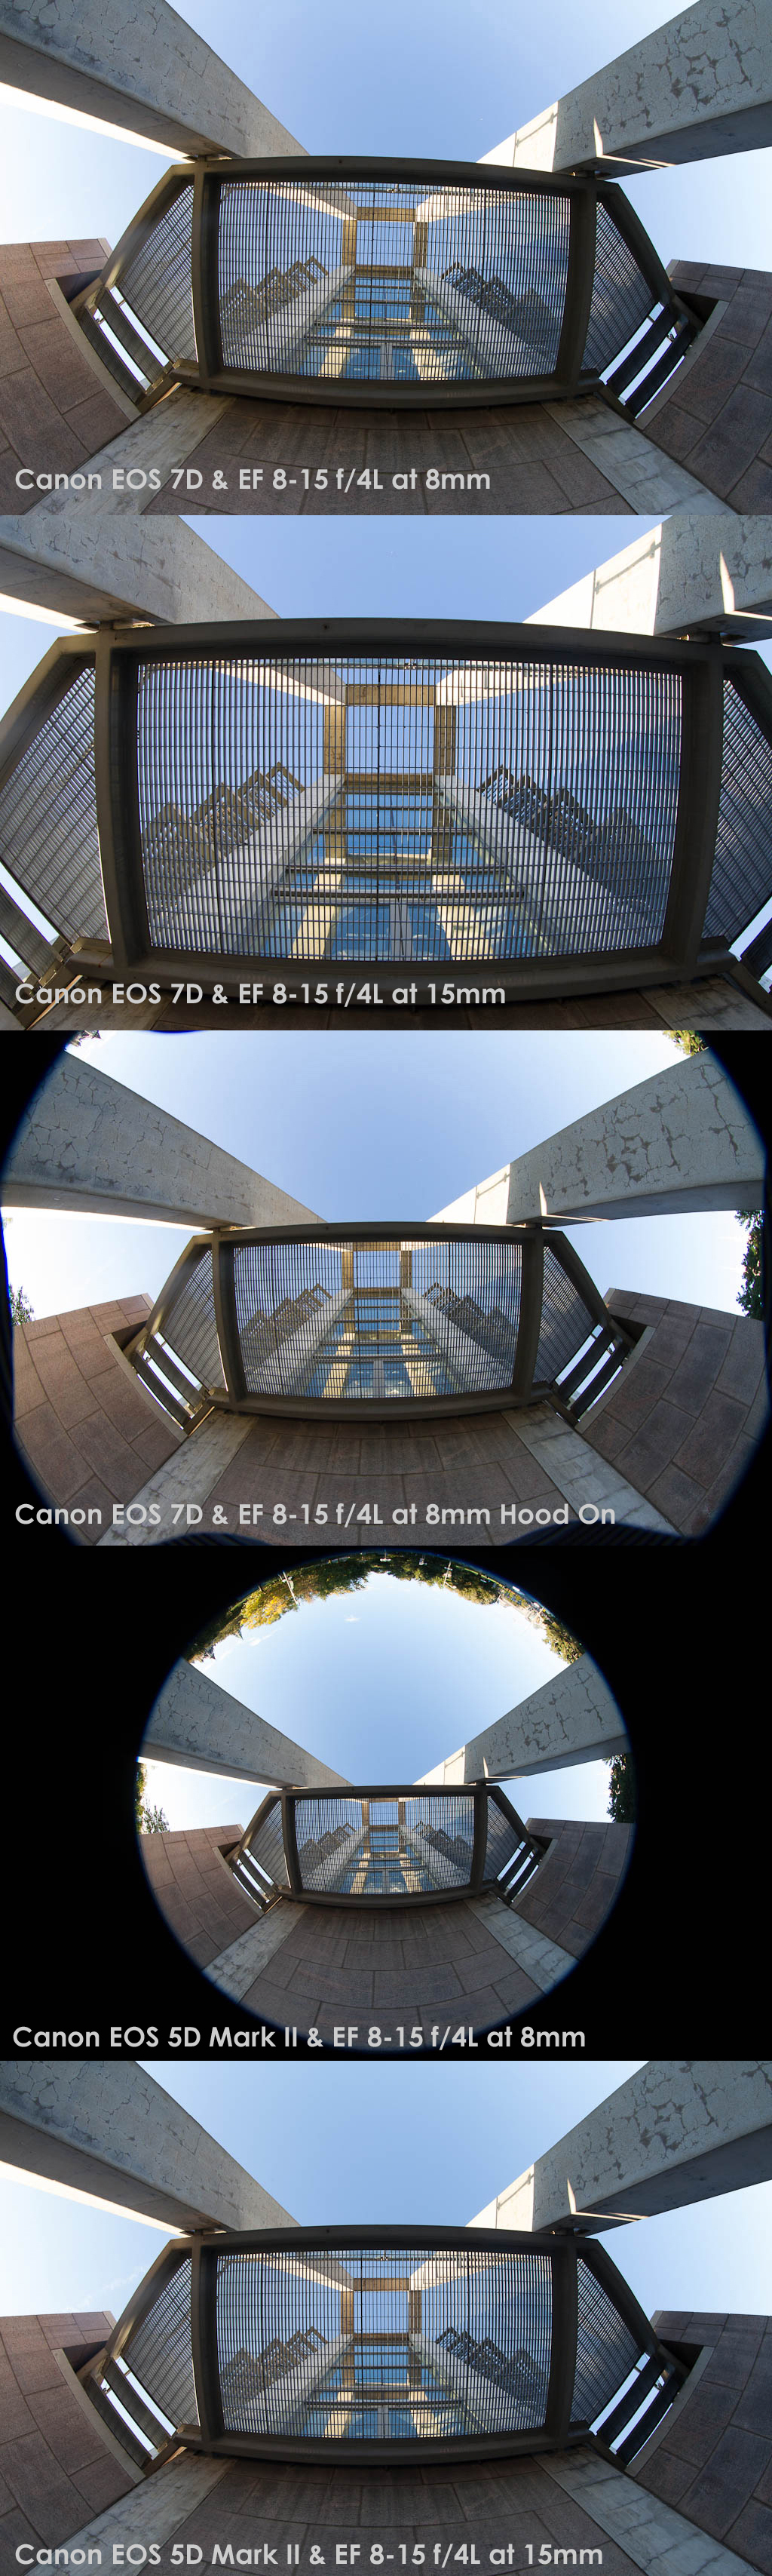 comparison8151 - Review - Canon EF 8-15 f/4L Fisheye